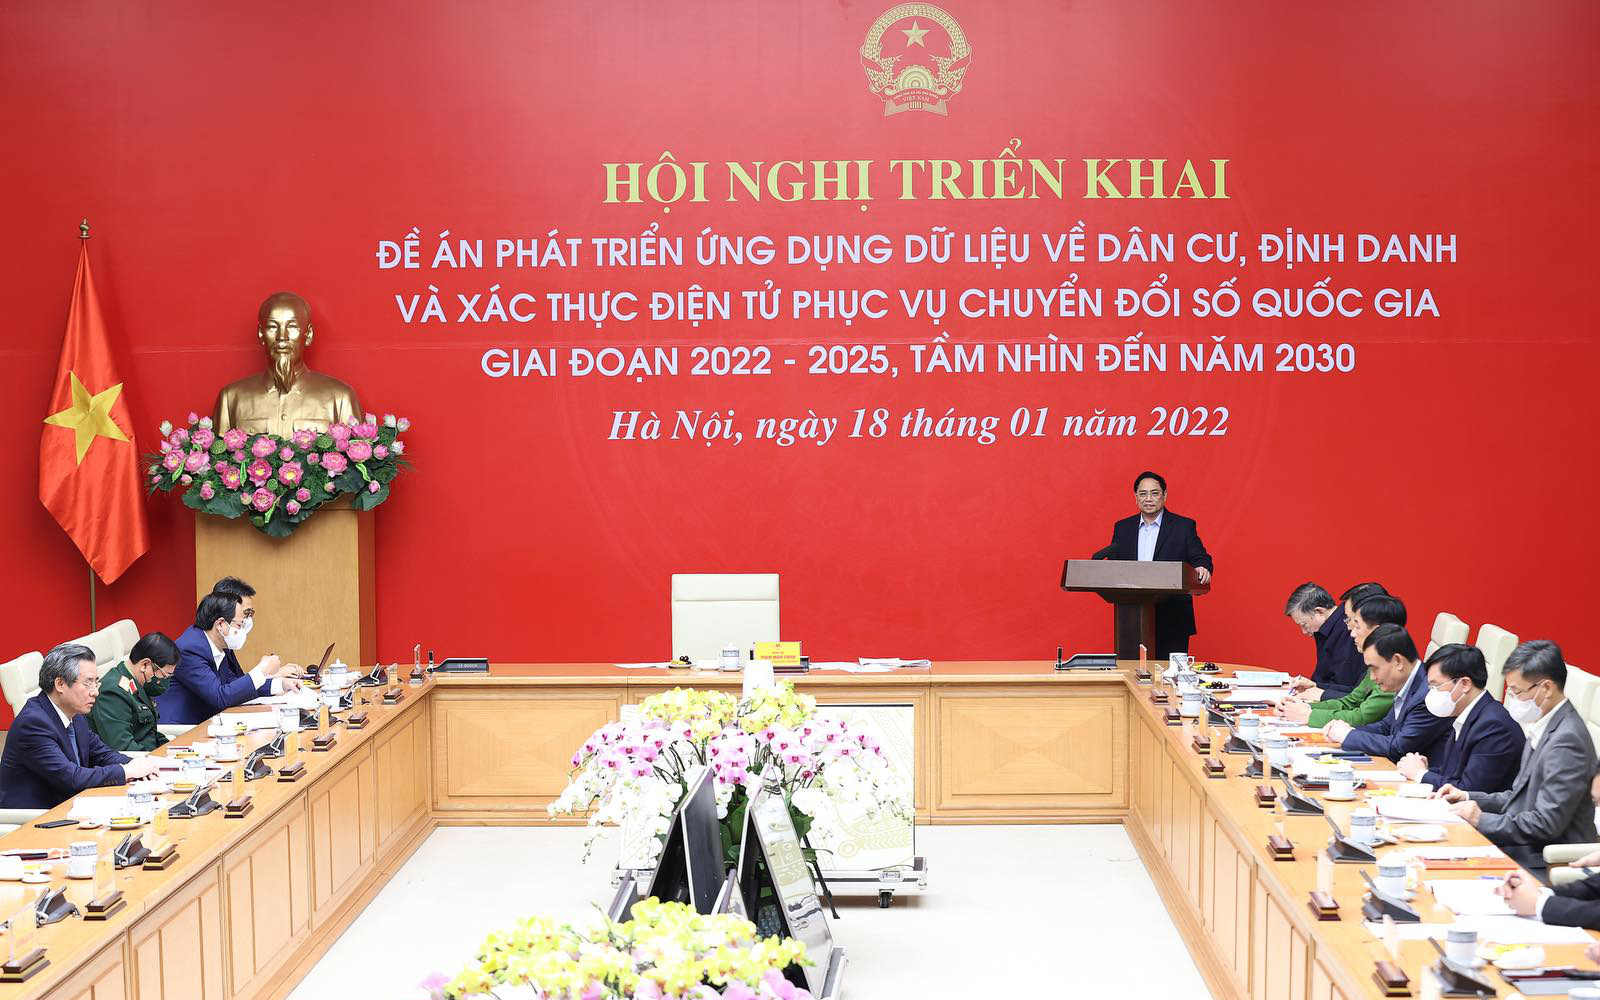 Thủ tướng Phạm Minh Chính: Nỗ lực xây dựng thành công cơ sở dữ liệu lớn về người dân, thúc đẩy chuyển đổi số quốc gia